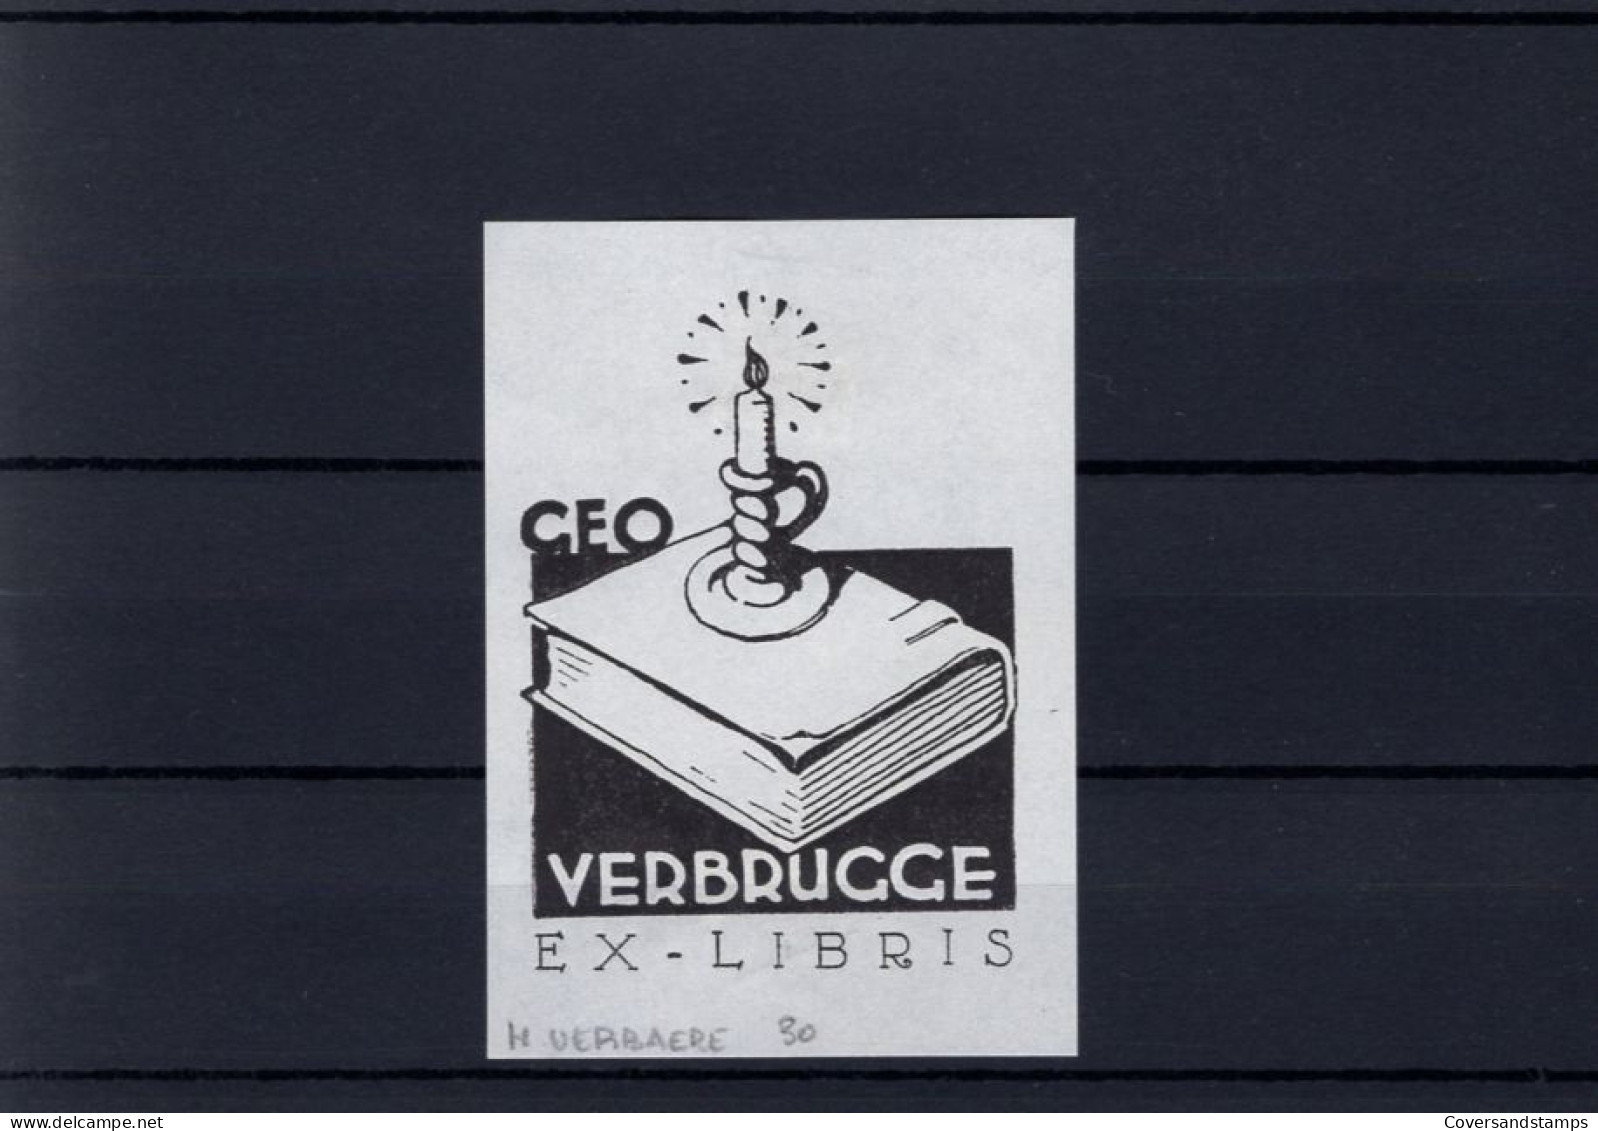 Ex-Libris : H. Verbaere - Geo Verbrugge - Bookplates